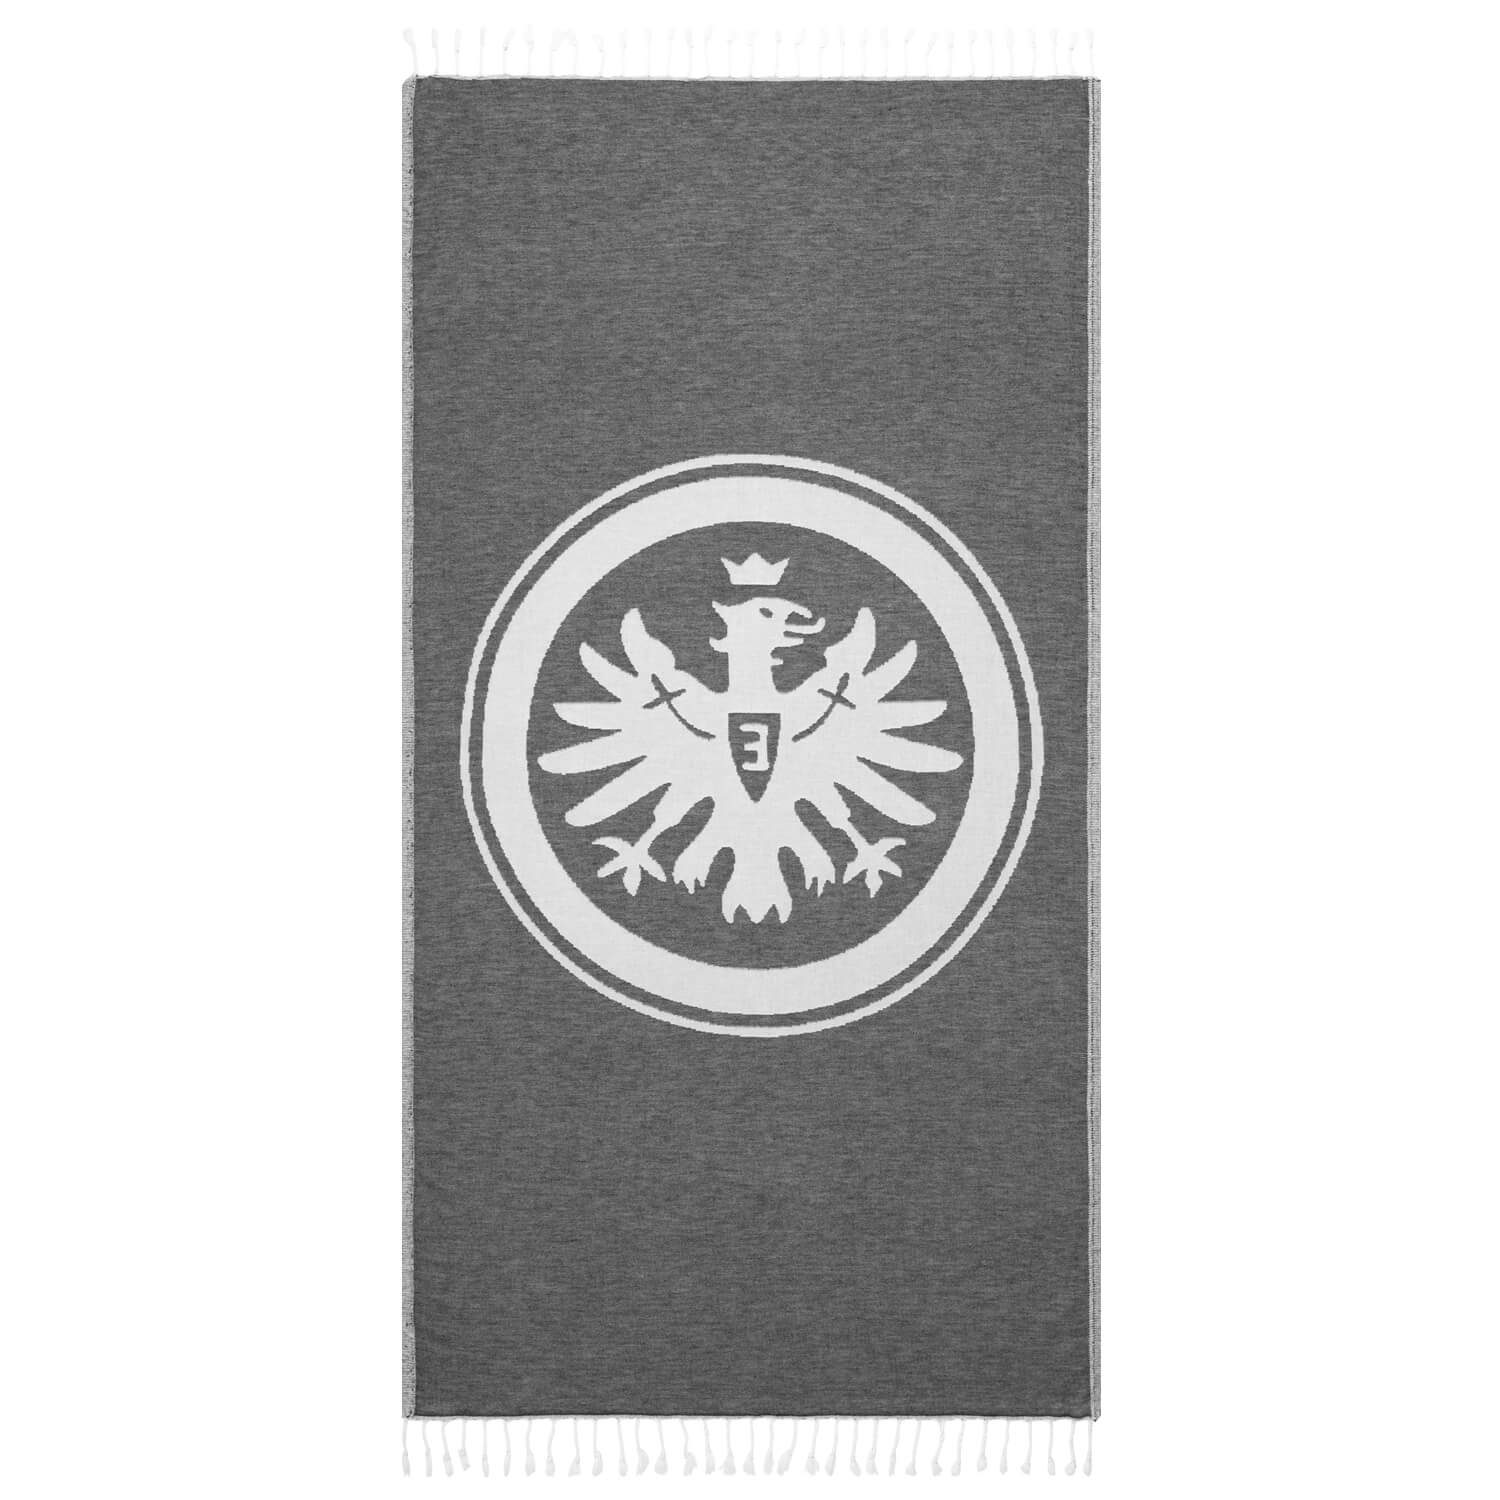 Bild 2: Peshta cloth Eintracht